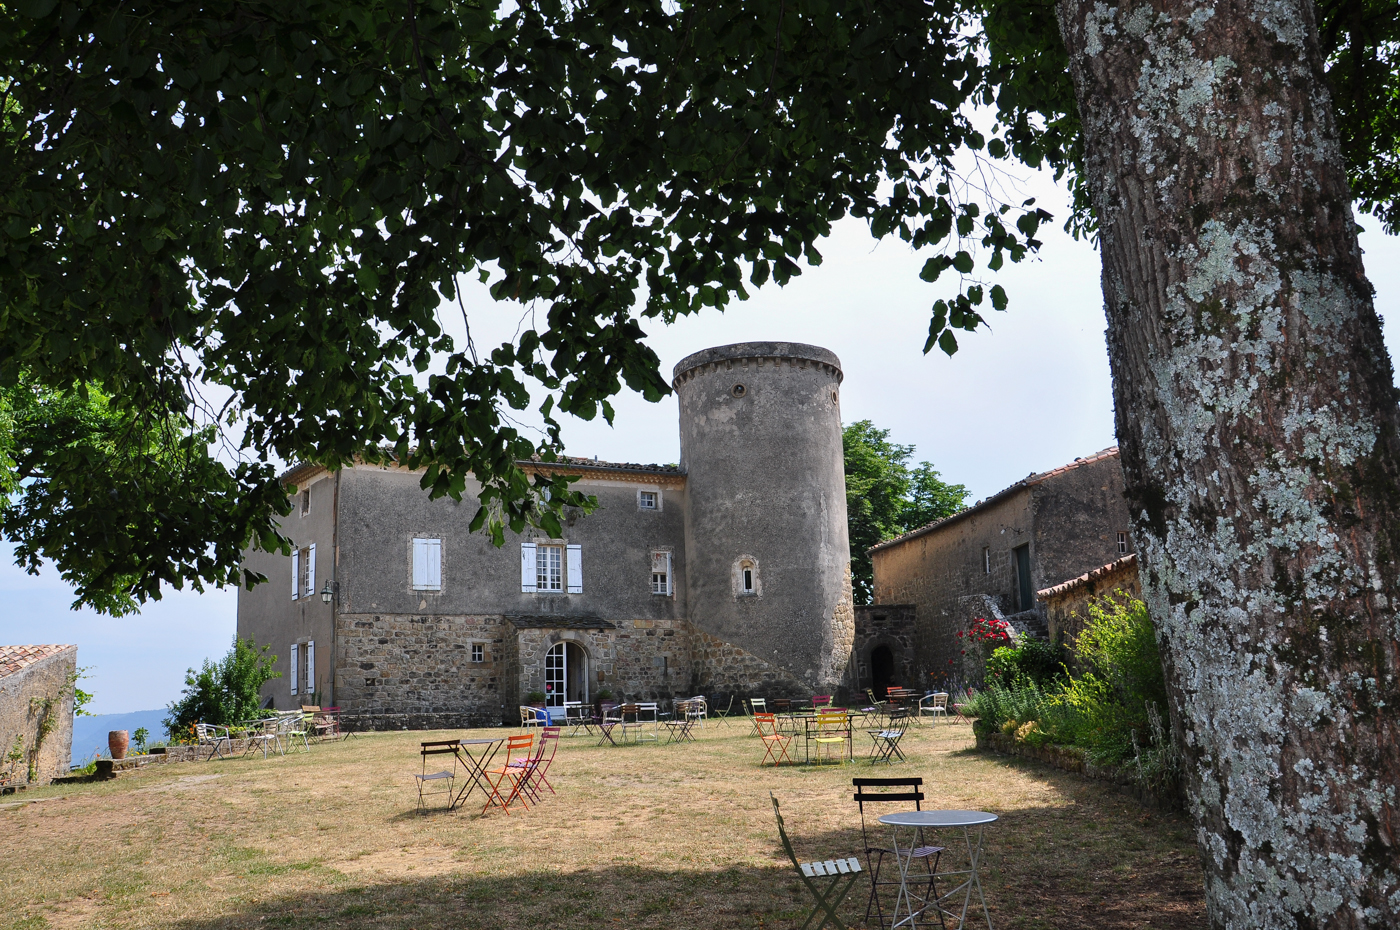 Holiday rentals for groups : Château de Liviers - Gîte d'étape